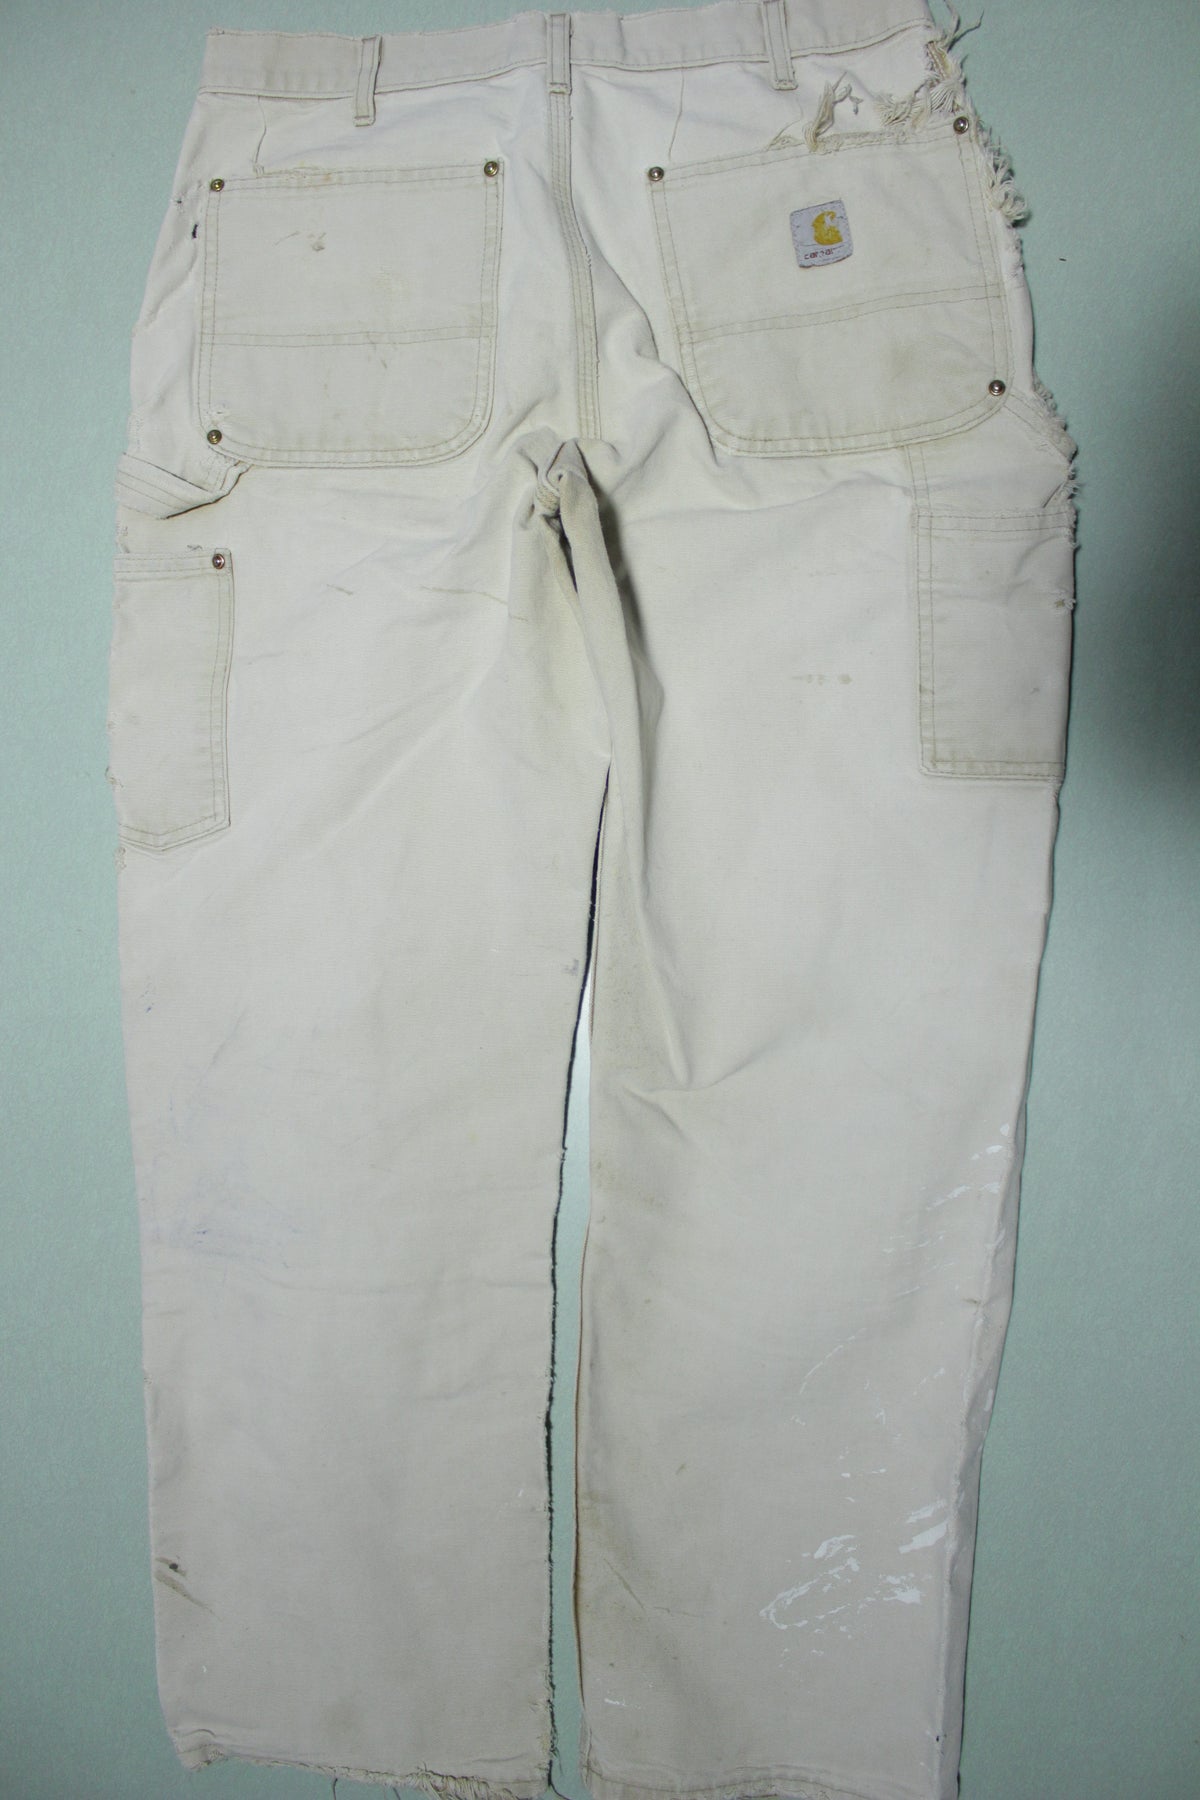 Vintage 1990s Carhartt Beige Distressed Double Knee Work Pants